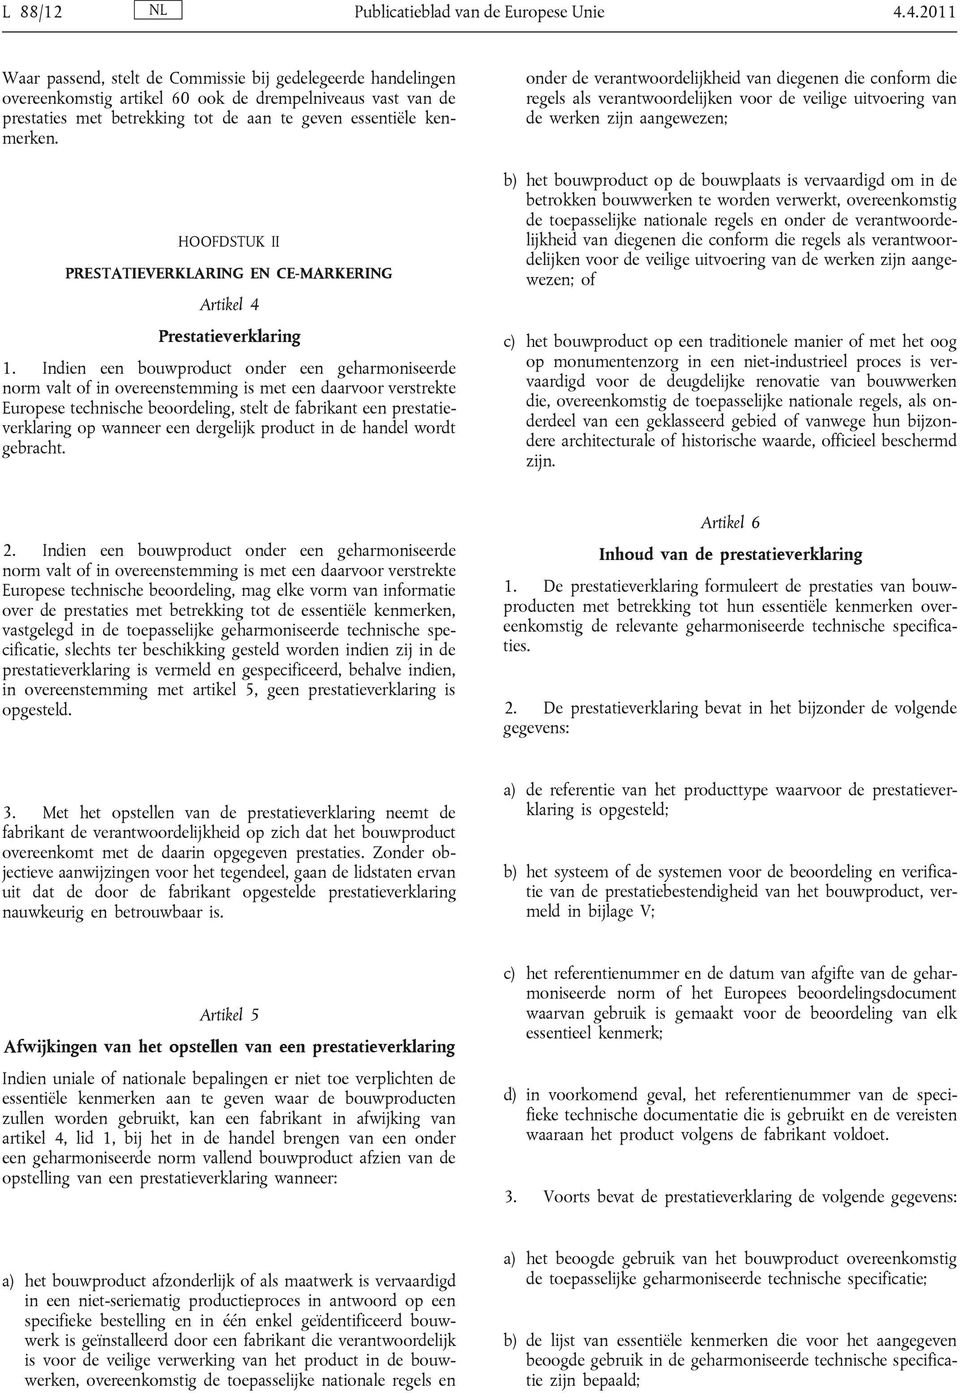 HOOFDSTUK II PRESTATIEVERKLARING EN CE-MARKERING Artikel 4 Prestatieverklaring 1.